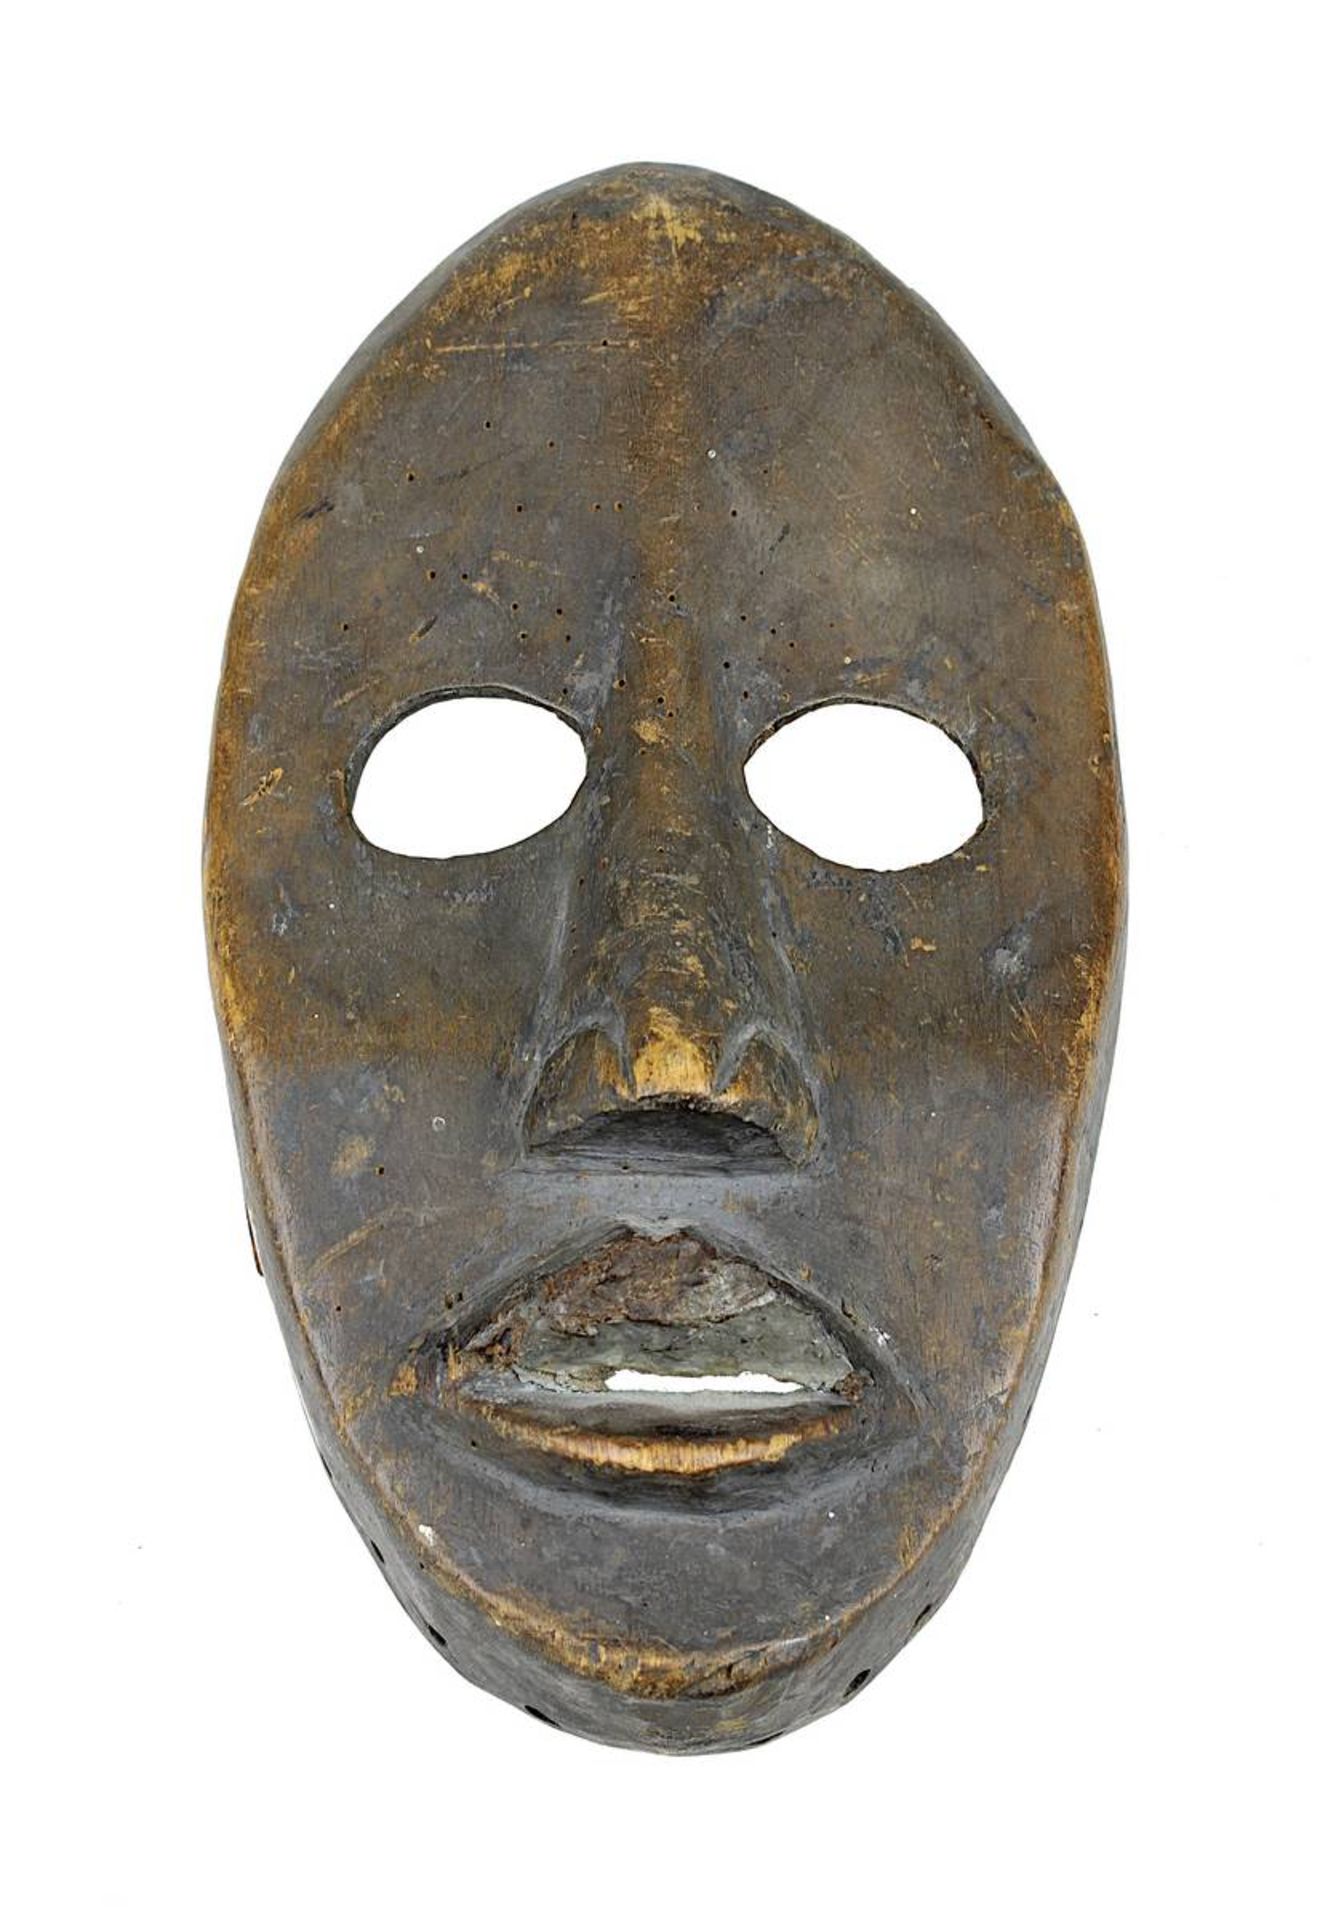 Gesichtsmaske der Dan, Côte d'Ivoire, helles Holz dunkel gefärbt, schmales Gesicht mit großen oval a